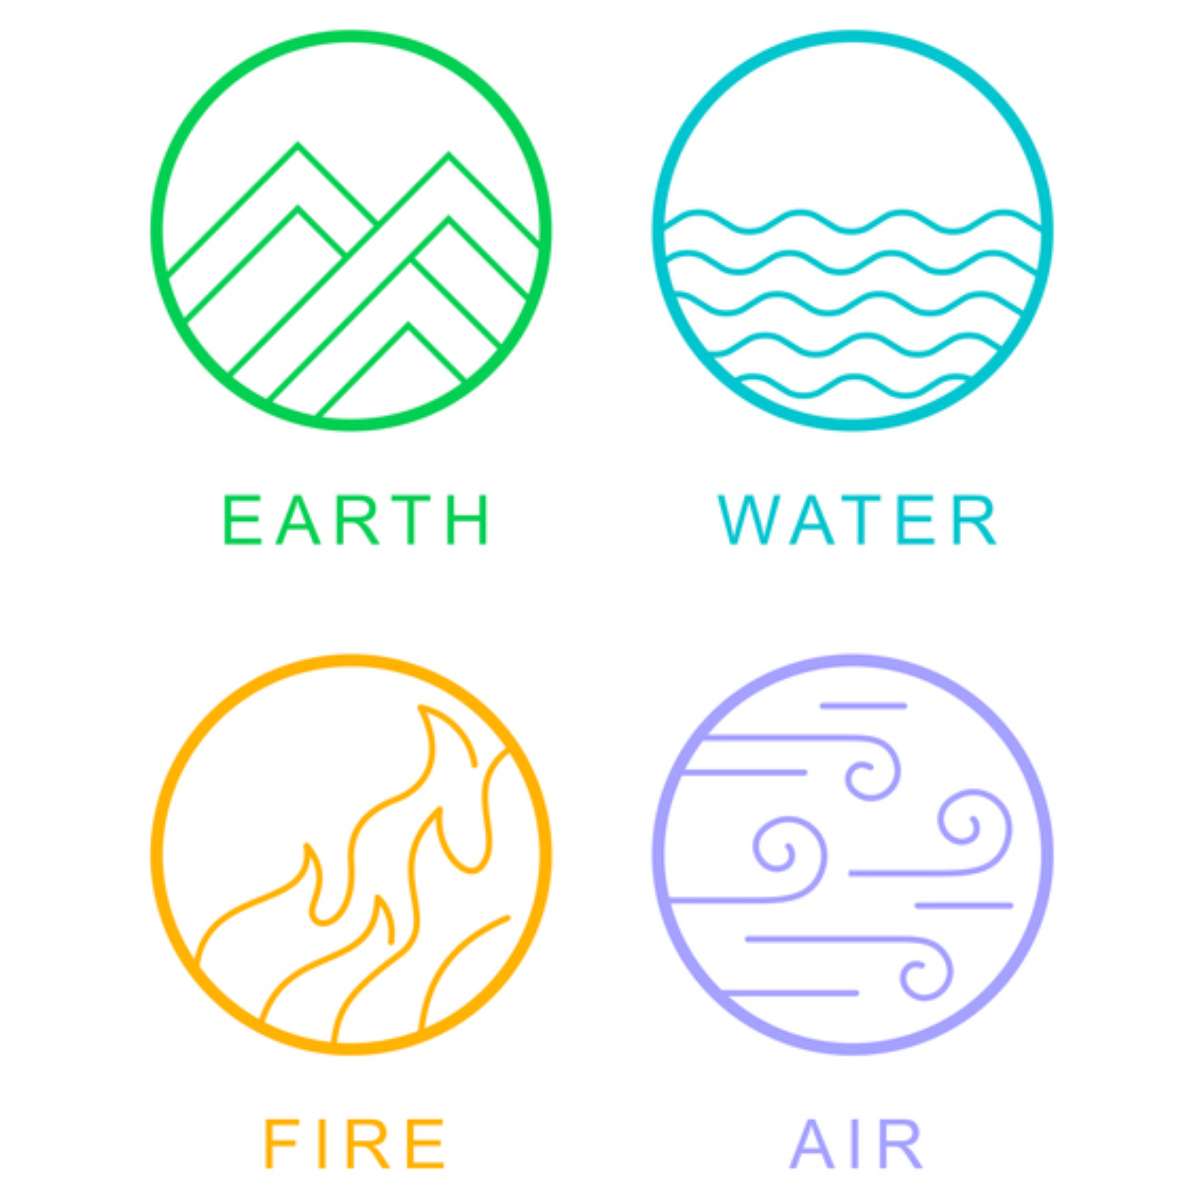 Círculo do zodíaco elementos dos signos do zodíaco terra água ar fogo casas  do horóscopo e planetas